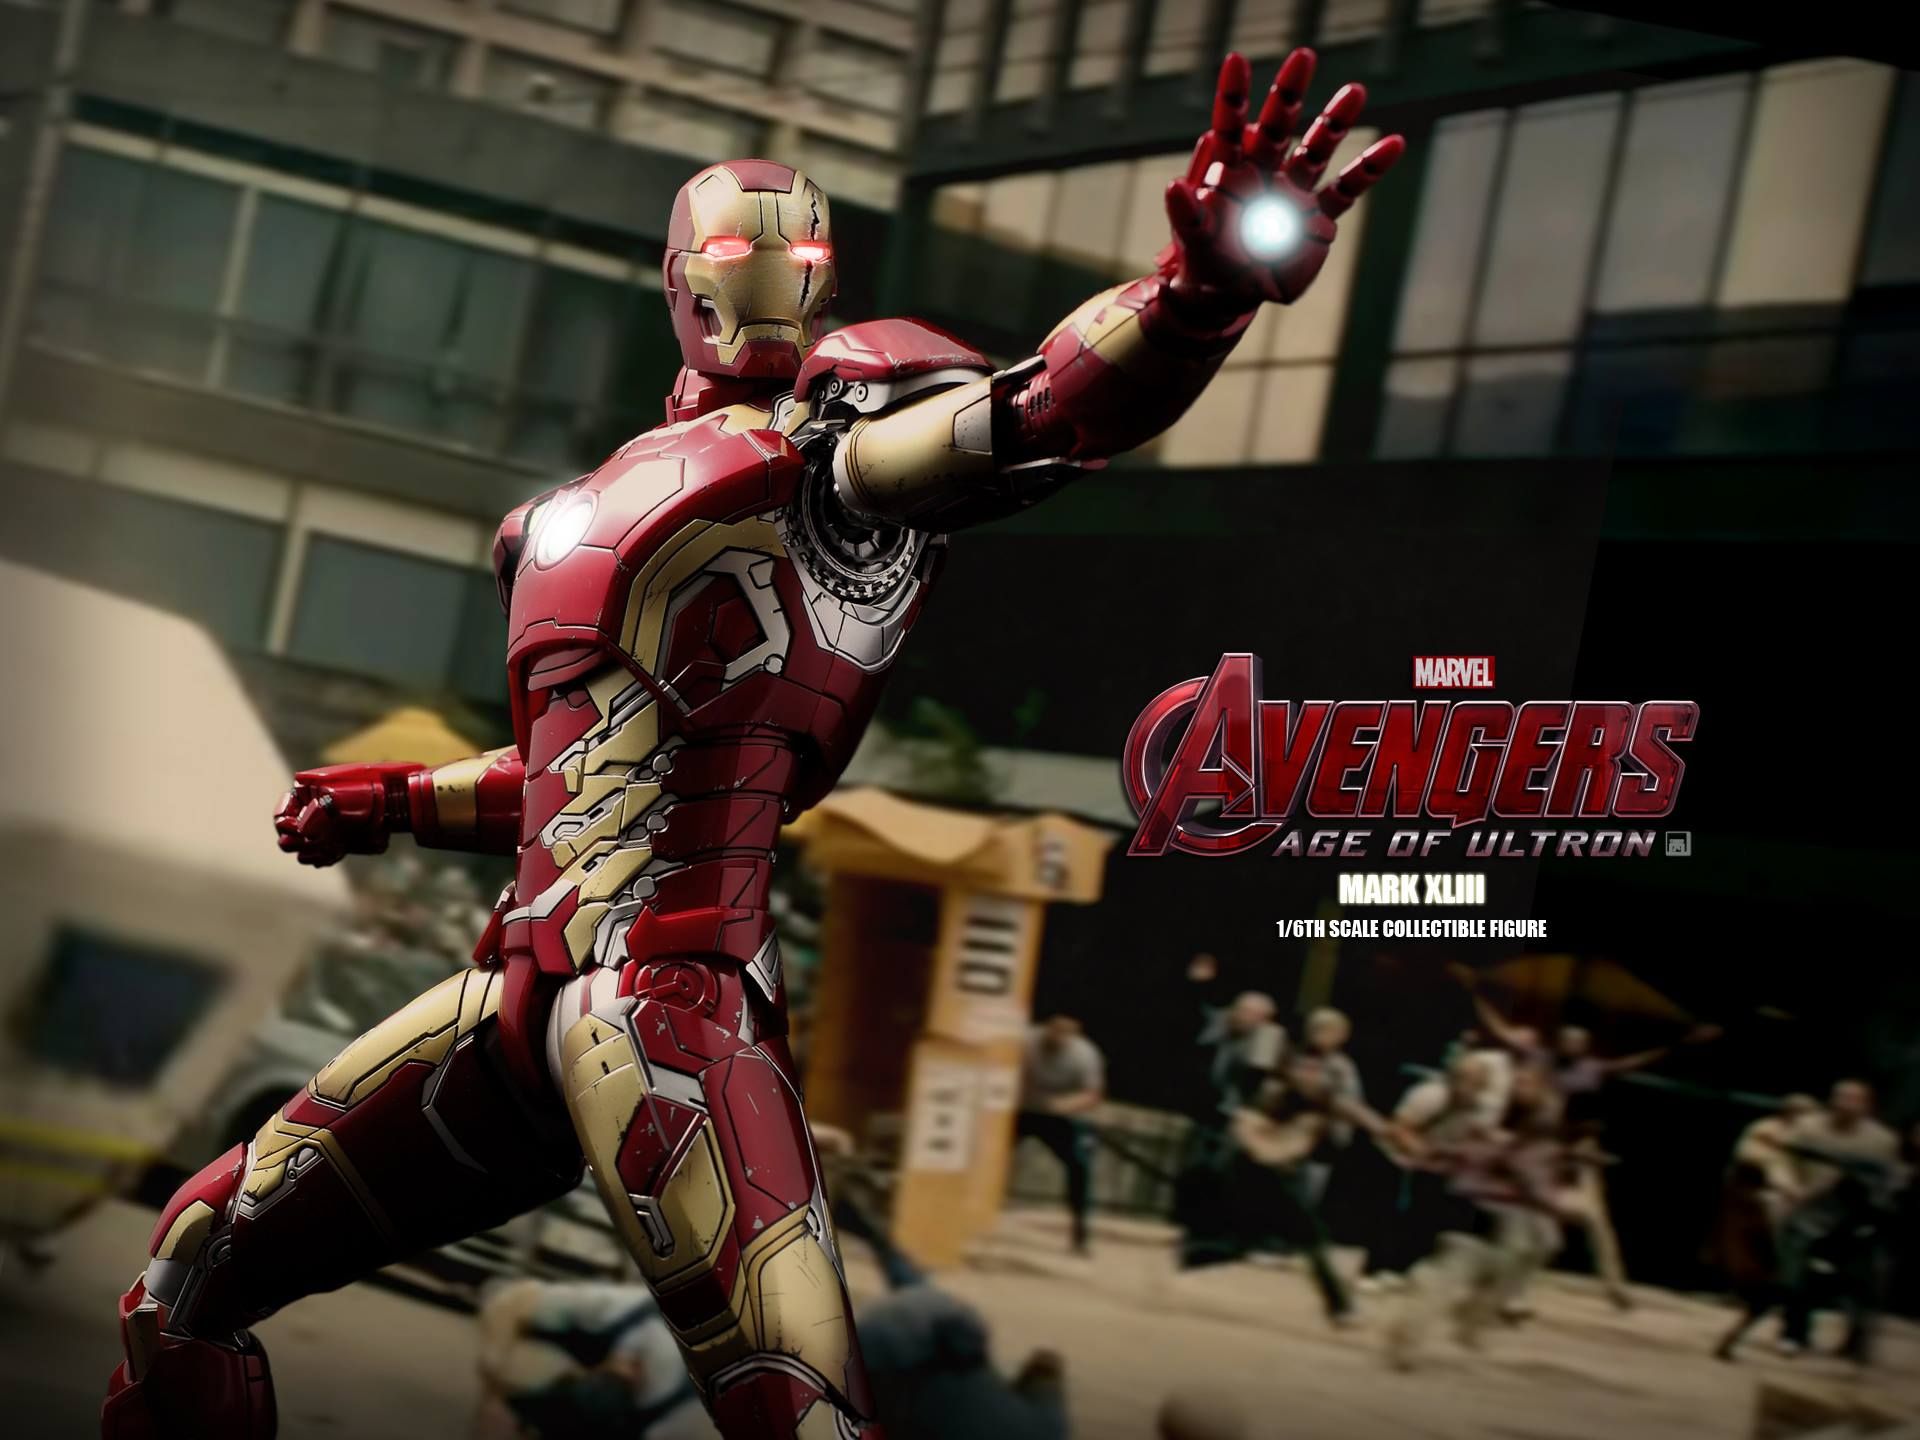 Avengers 2 Iron Man Mark XLIII Action Figure Photo 1